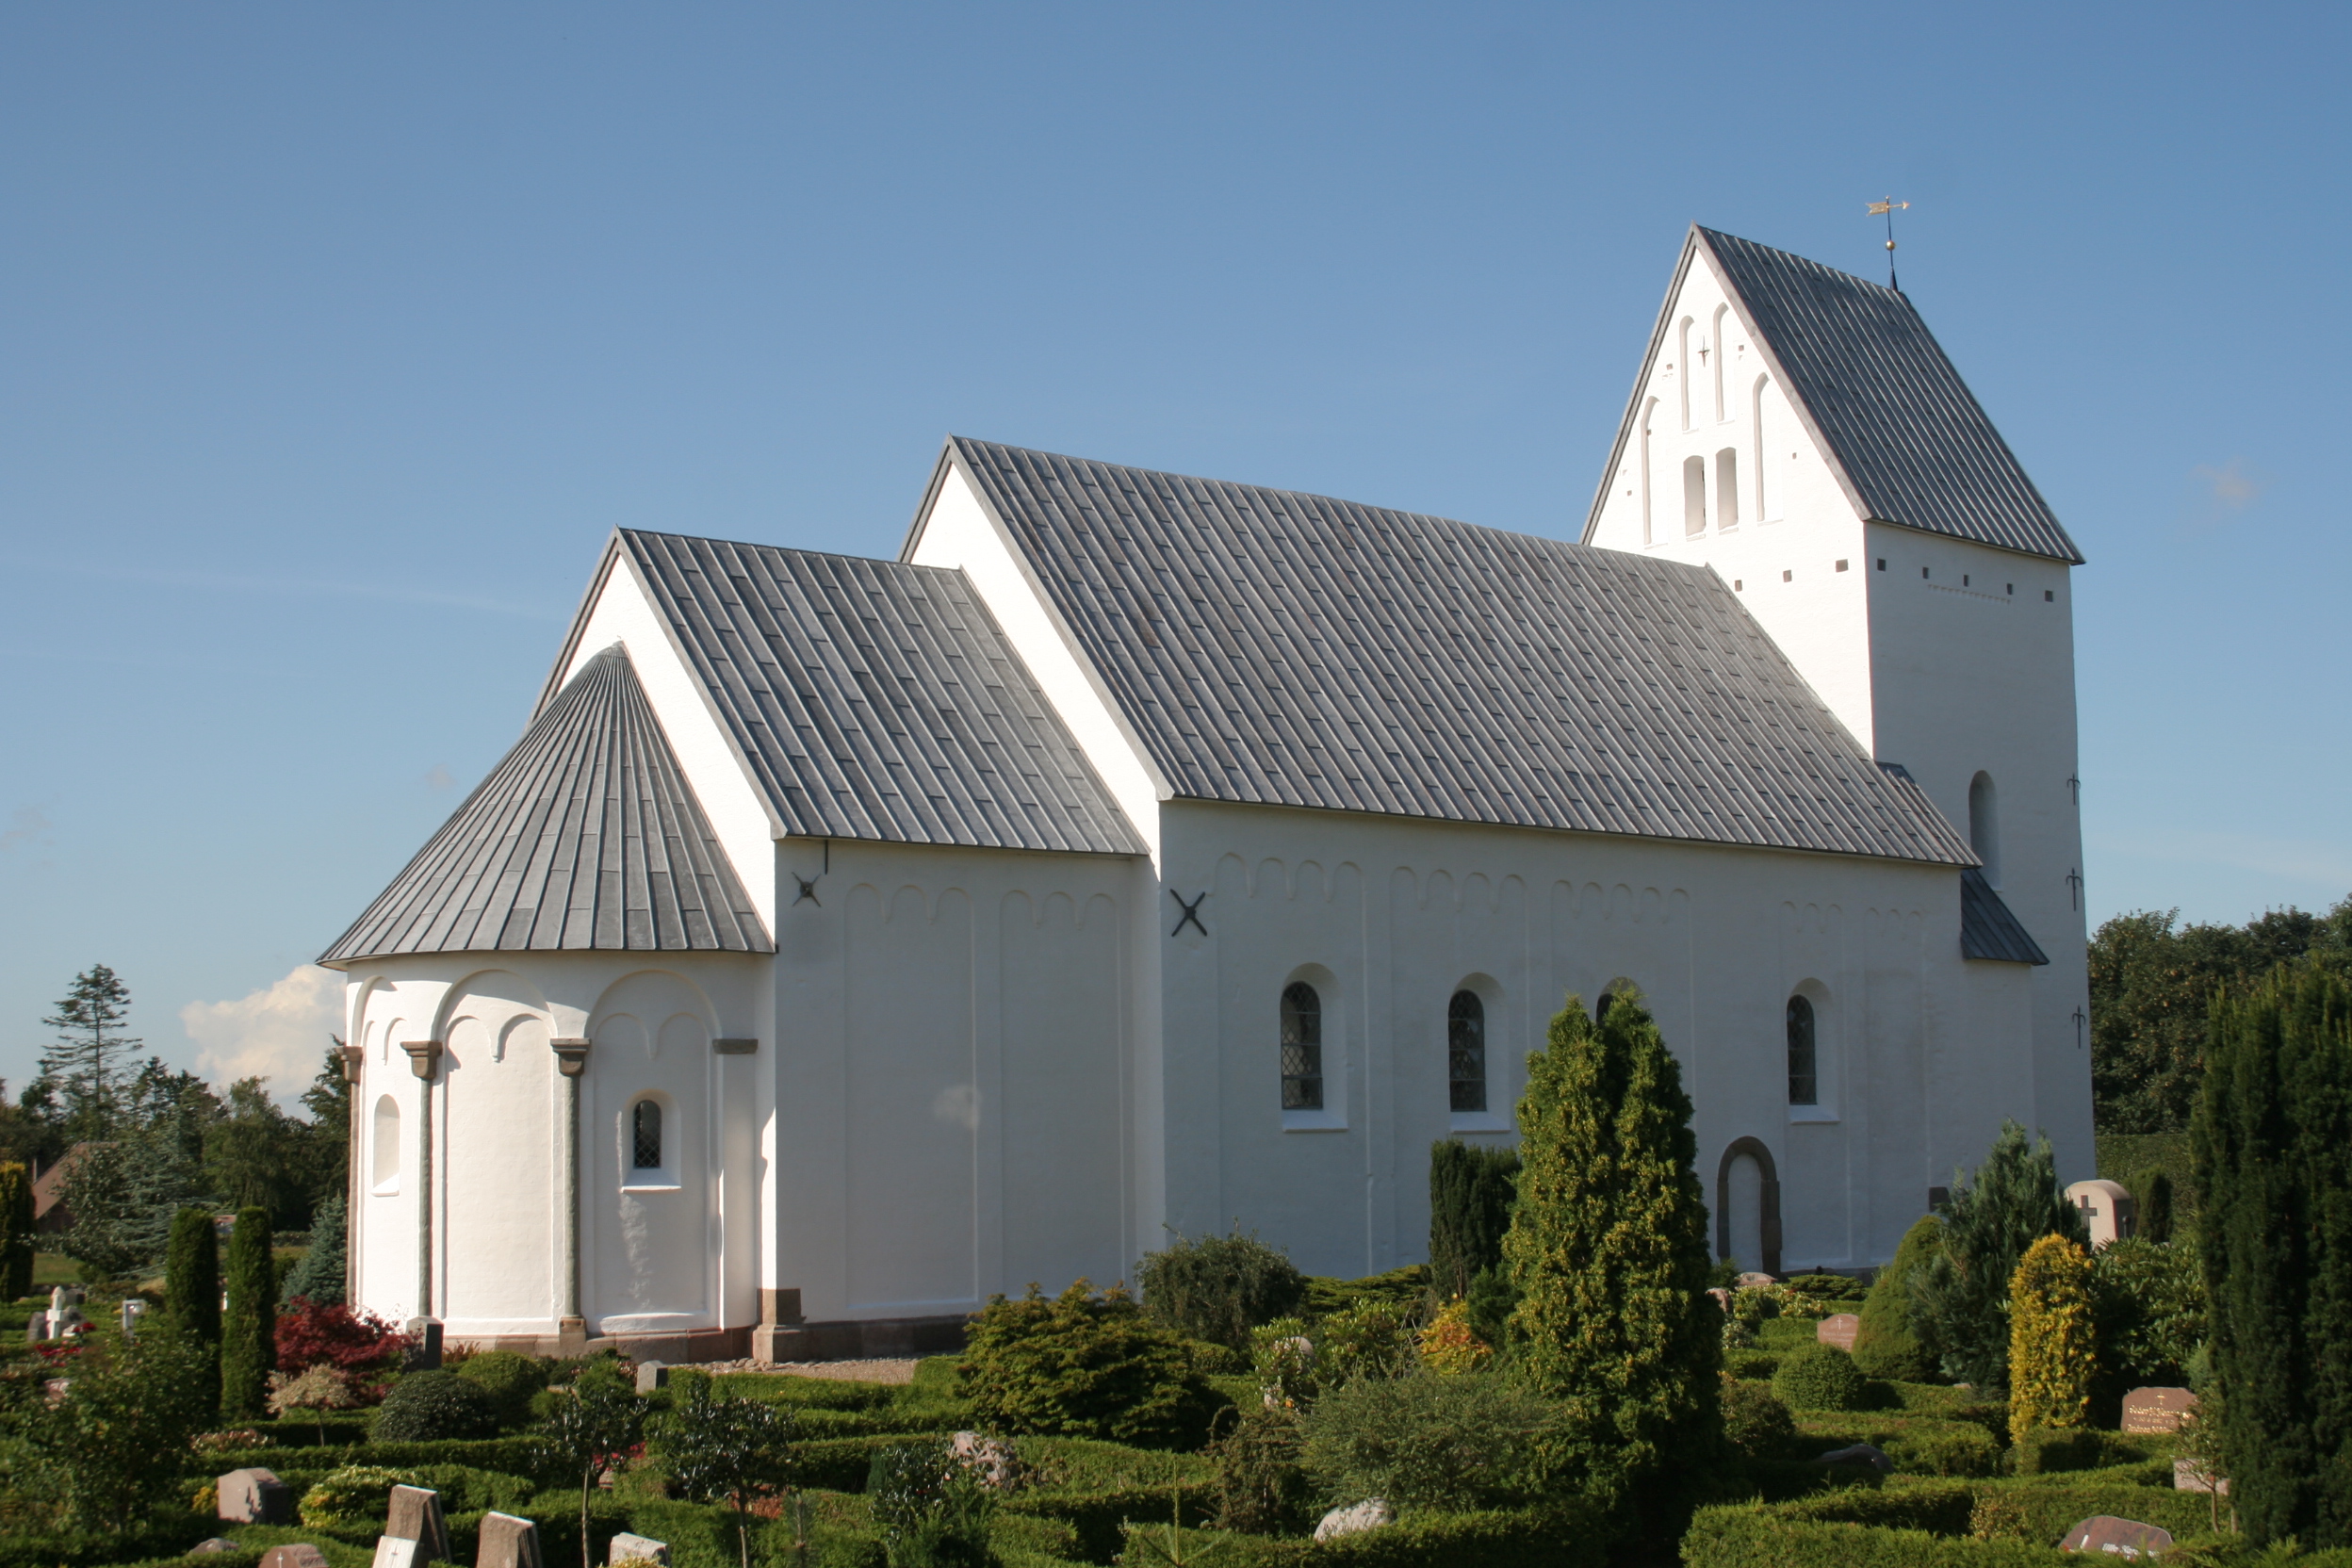 Jernved Kirke